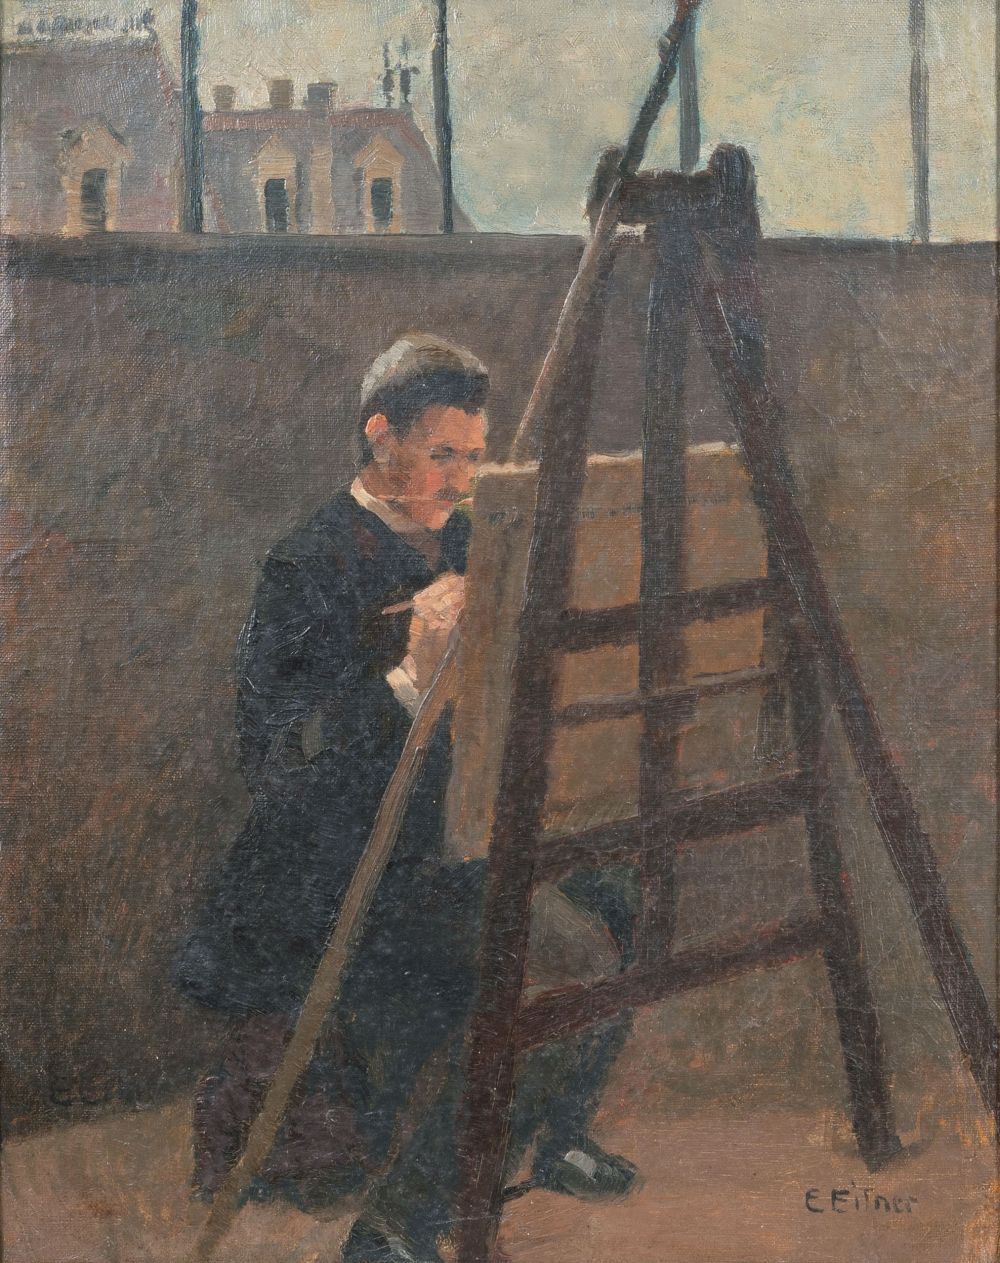 Portrait des Malers Biedermann an der Staffelei